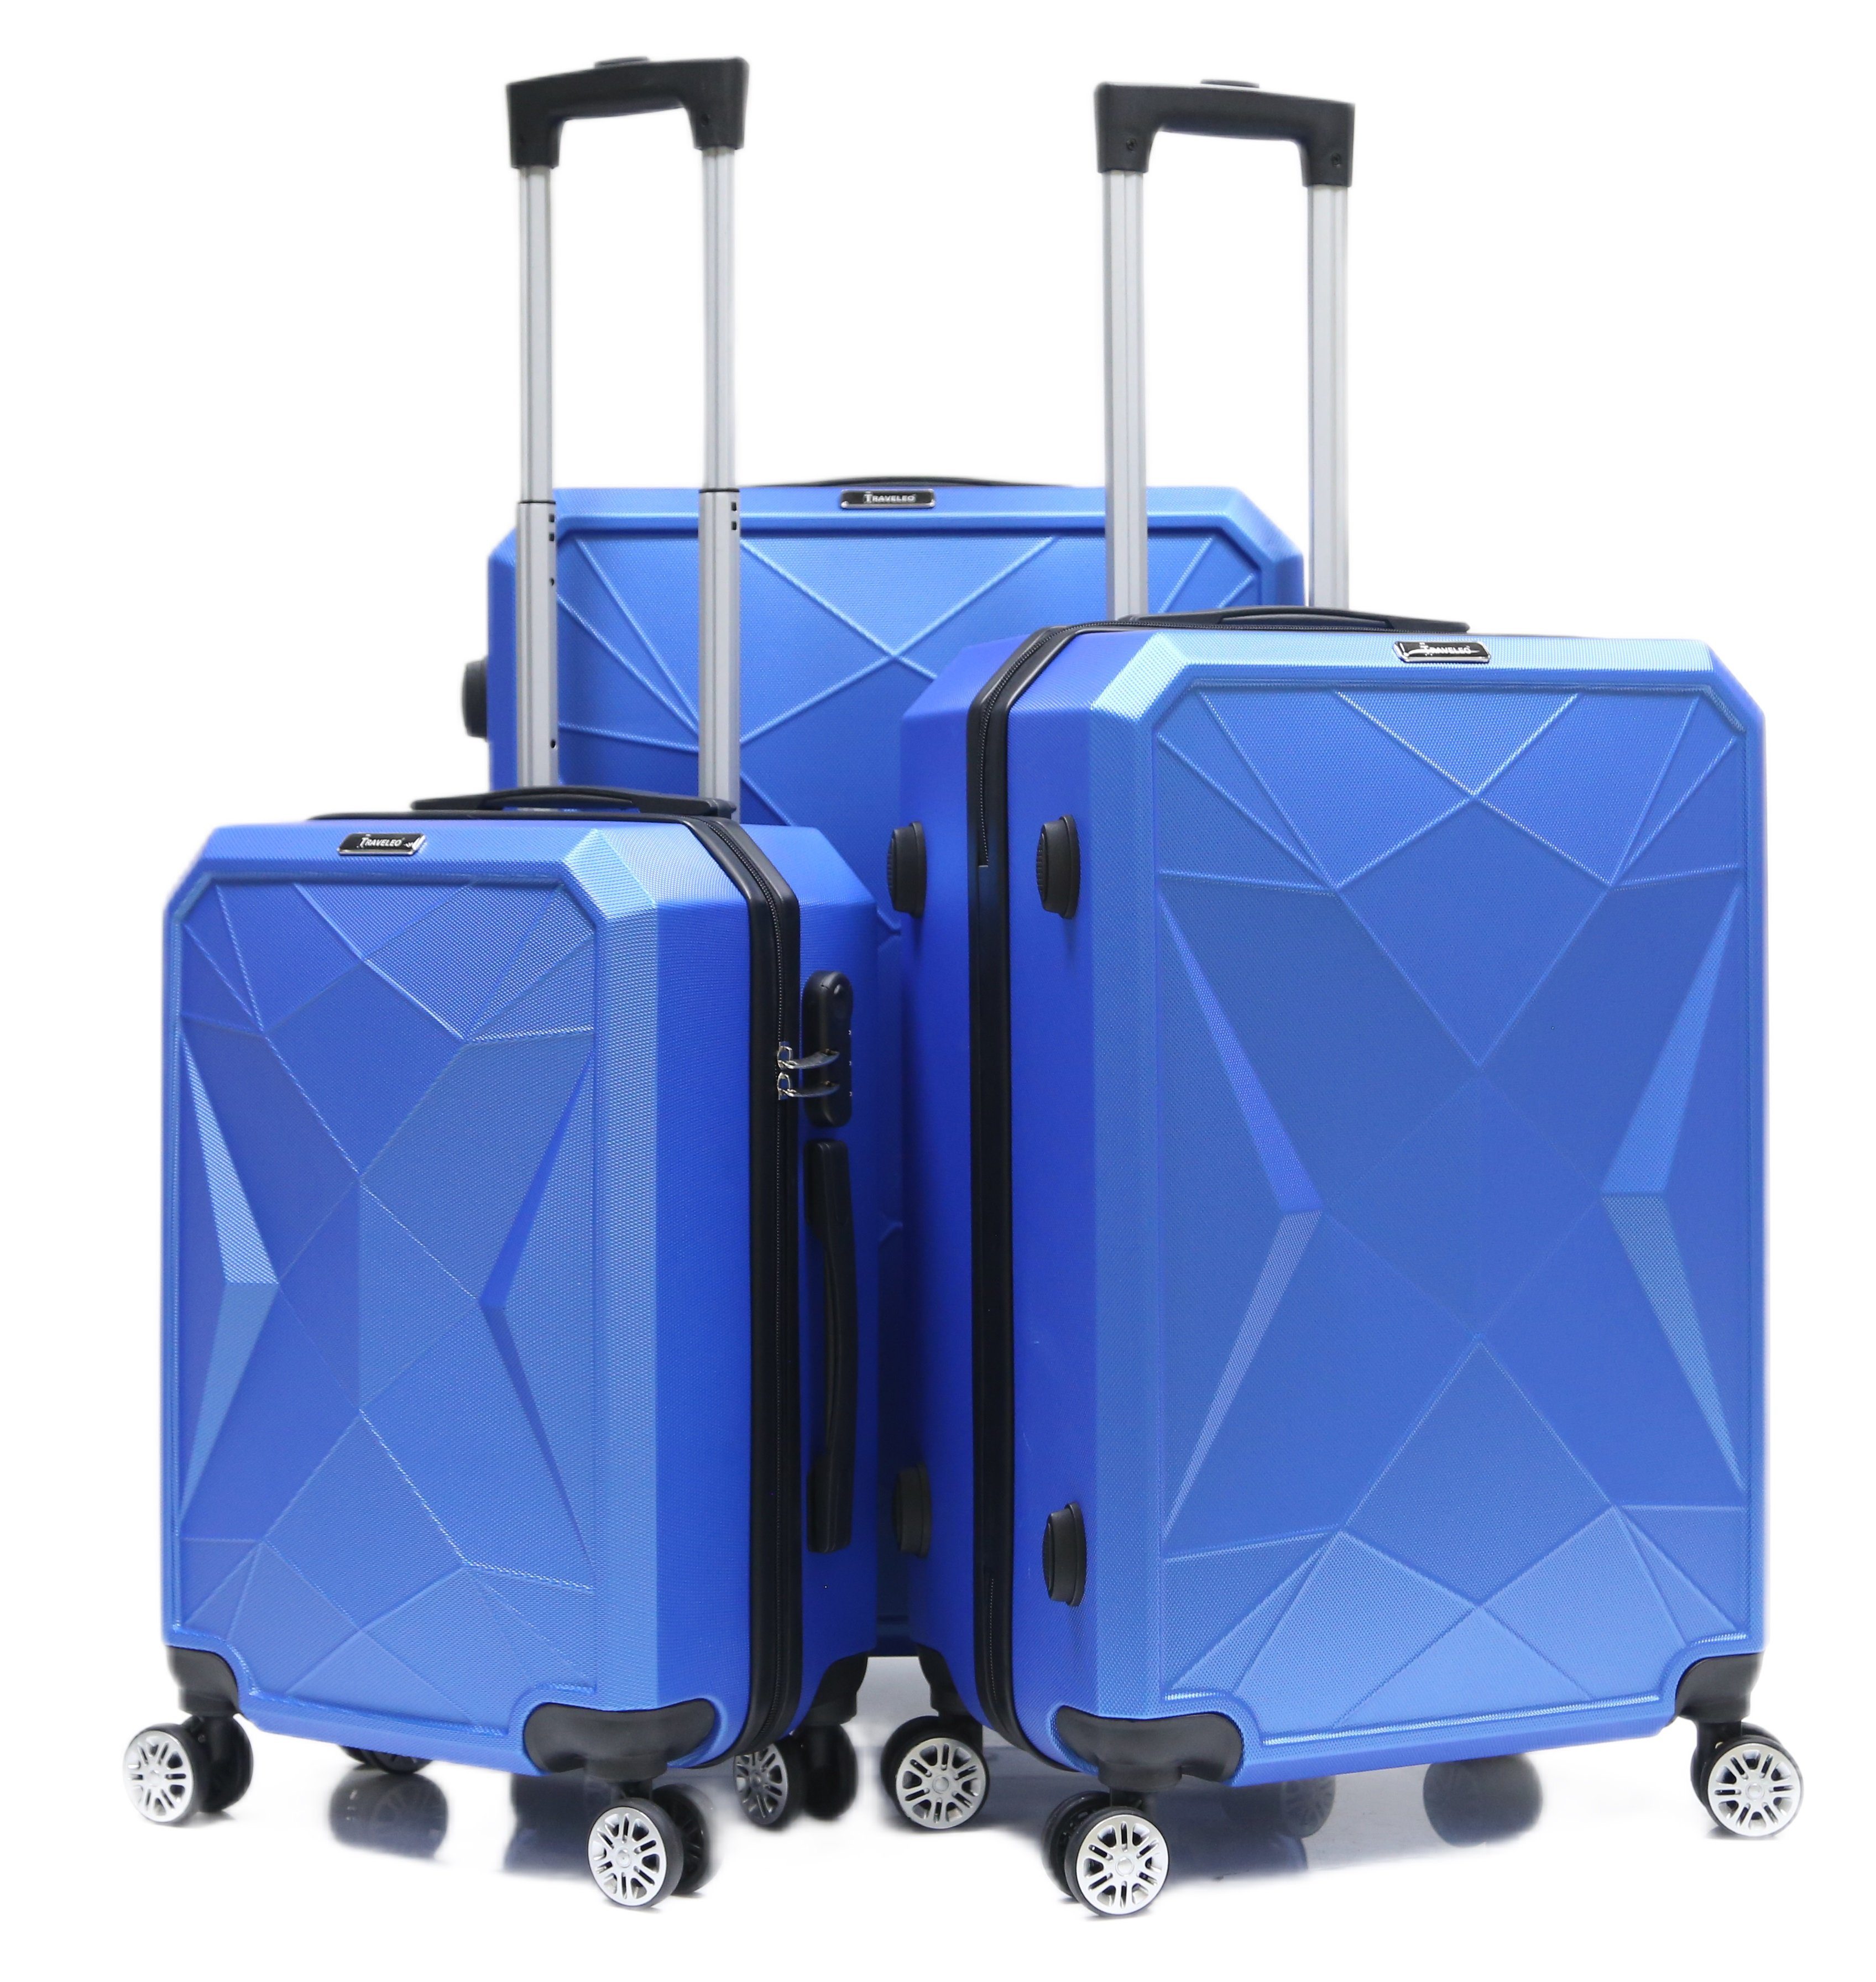 Rollen, tlg) Trolley Cheffinger Koffer 3-teilig 4 Kofferset, Blau Kofferset Reisekoffer Set Hartschale (3 ABS-03